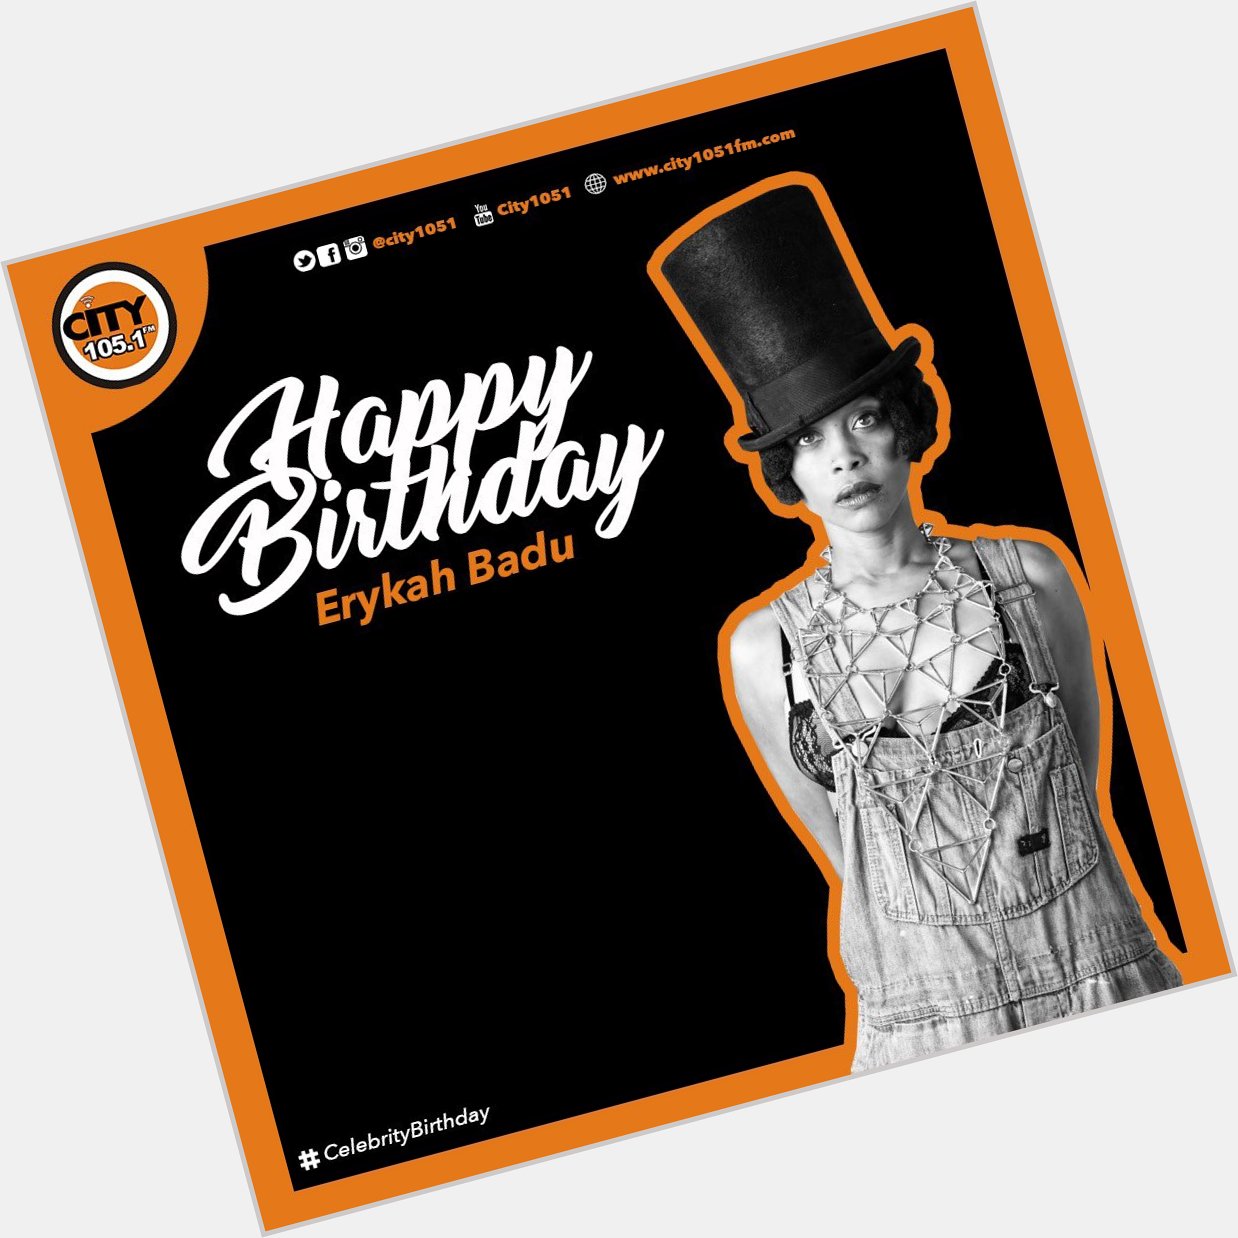 Tag a Erykah Badu fan I tag Happy Birthday 